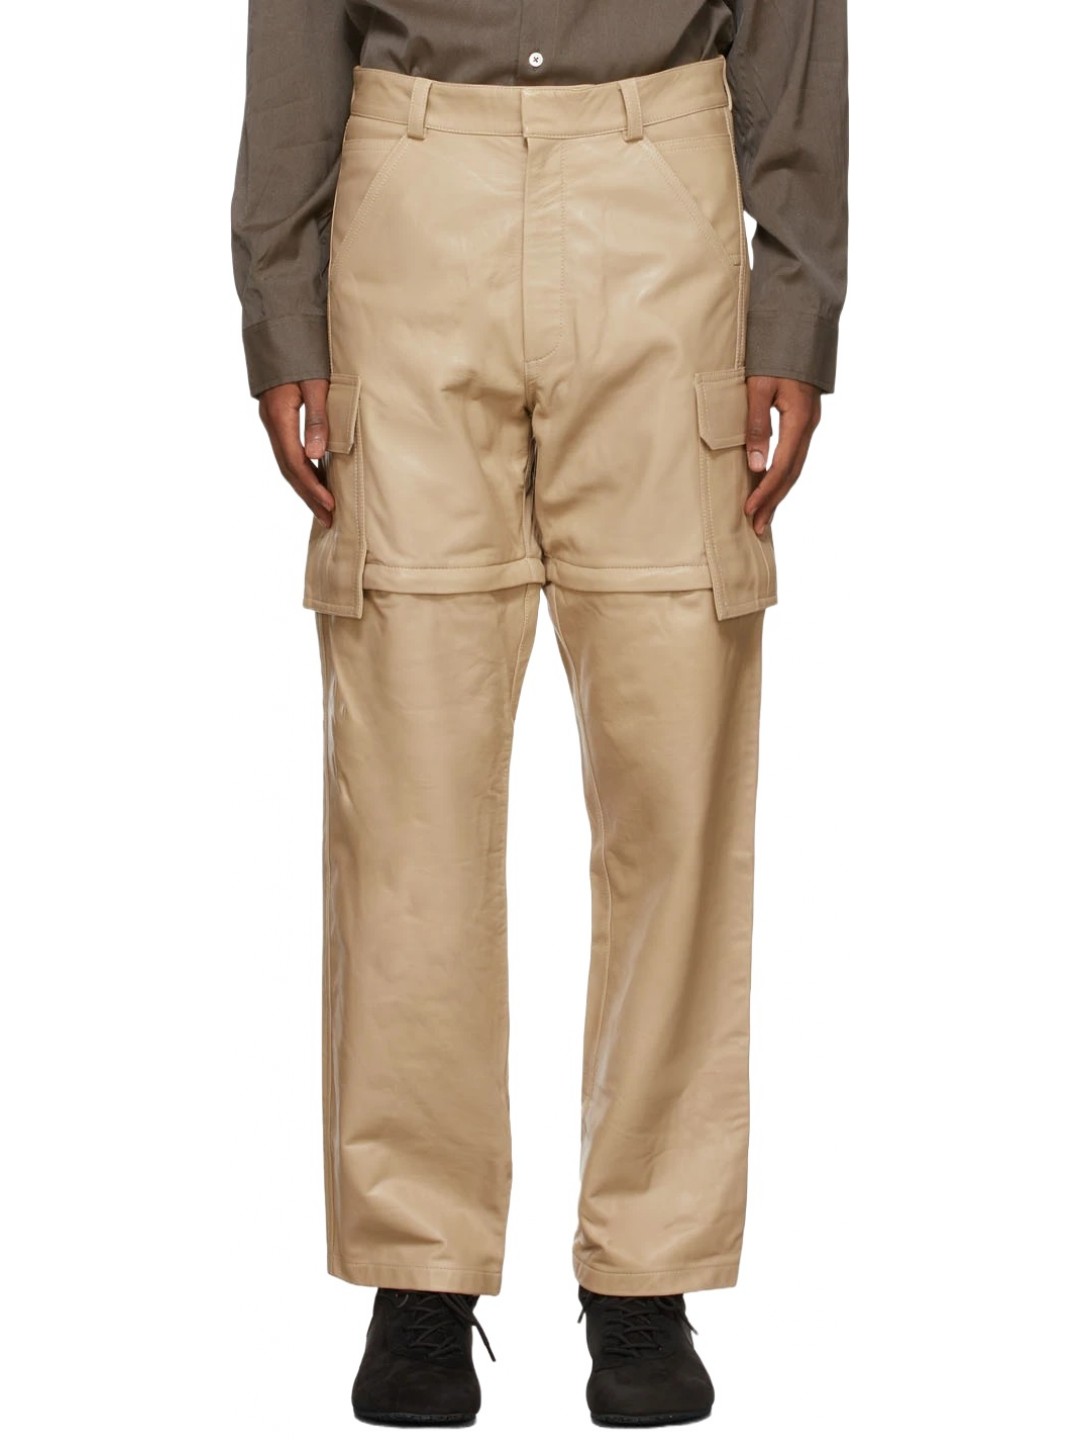 REI Tan Convertible Cargo Pants | Cargo pants, Clothes design, Cargo